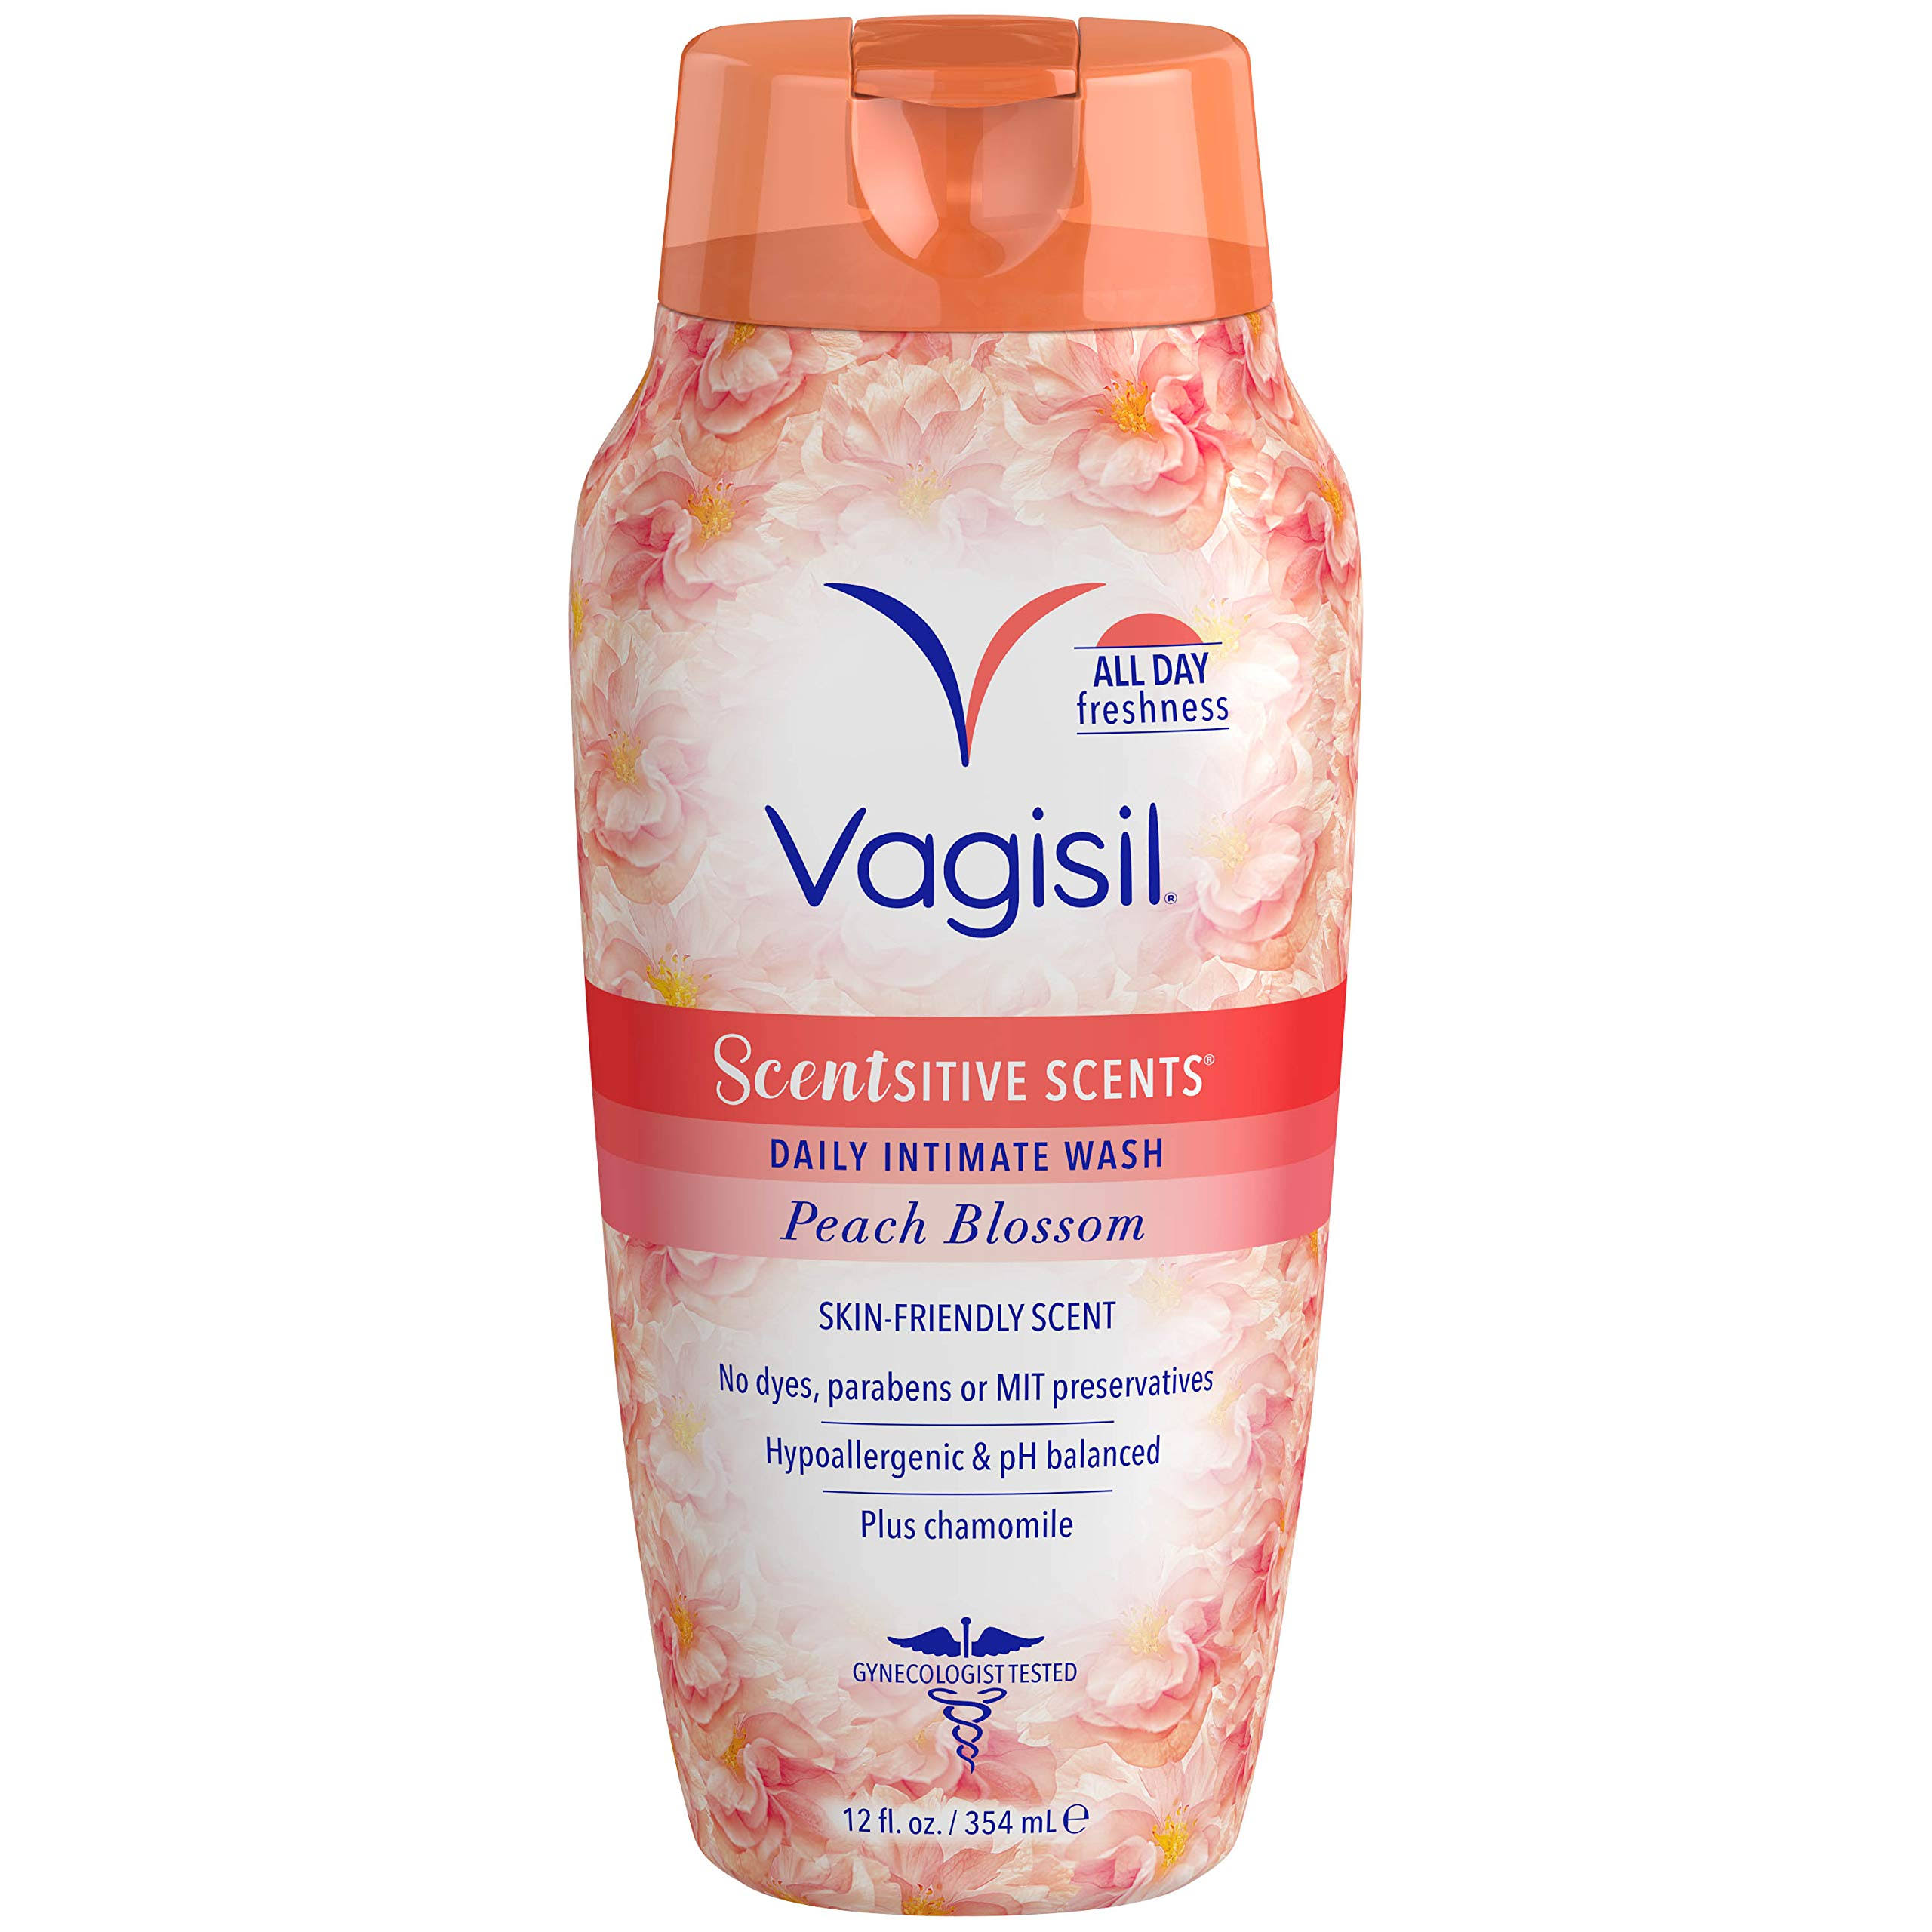 Vagisil Scentsitive Scents Intimate Wash - Peach Blossom, 12oz